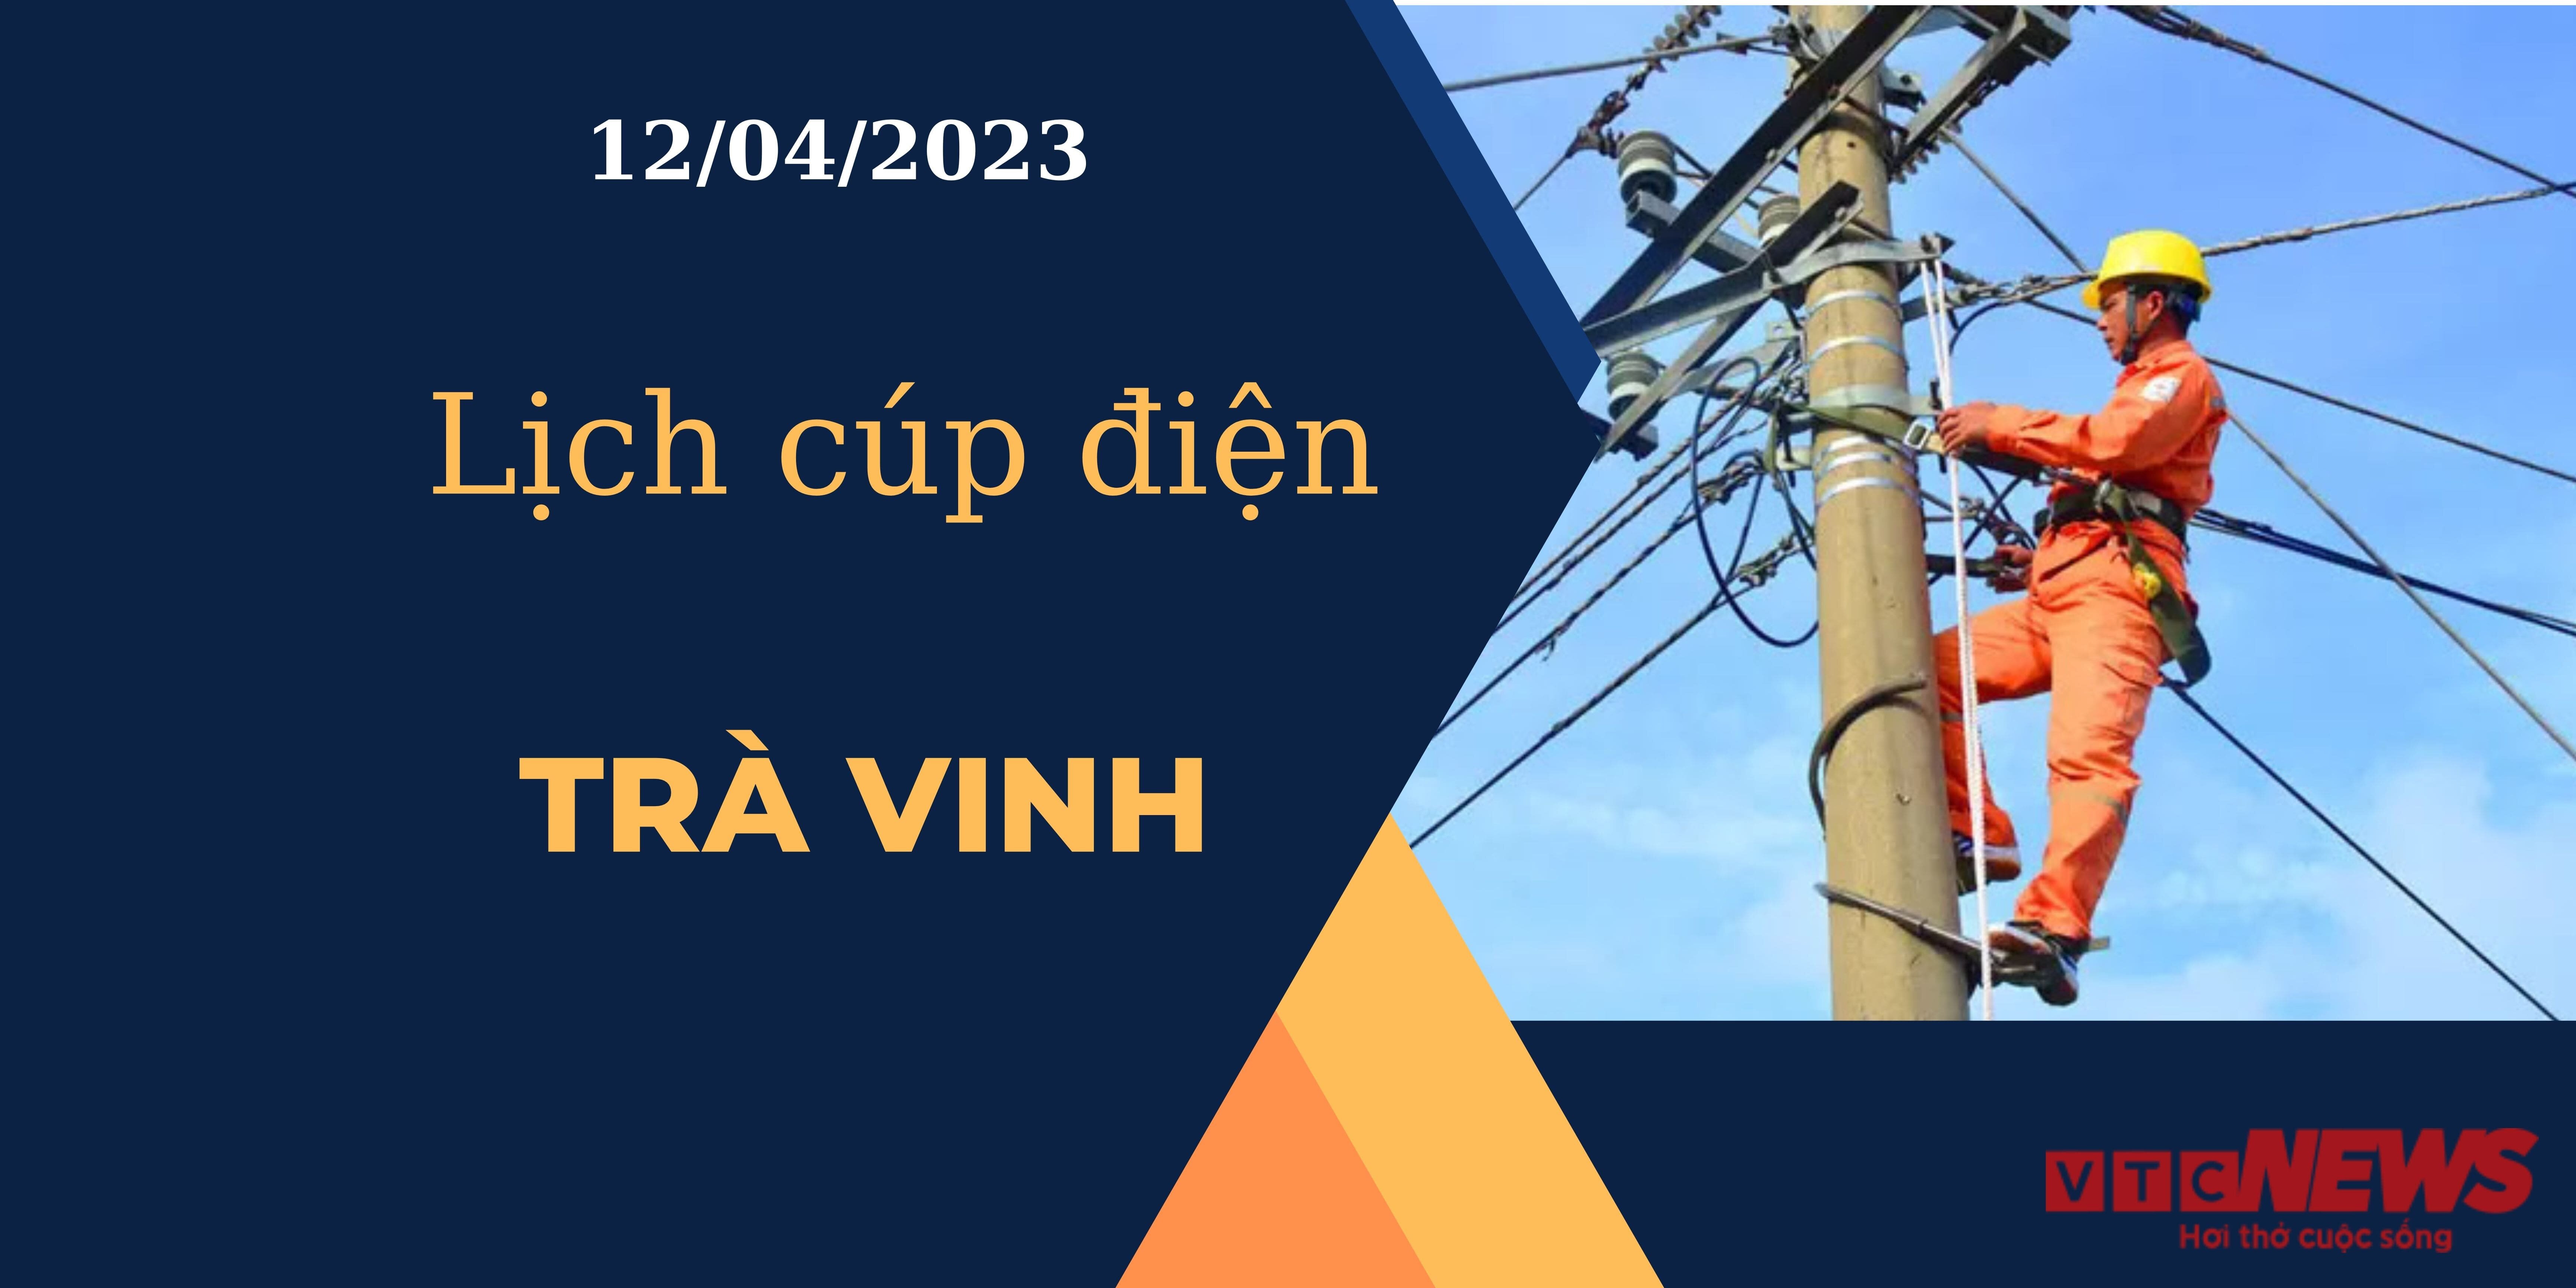 Lịch cúp điện hôm nay tại Trà Vinh ngày 12/04/2023 - 1